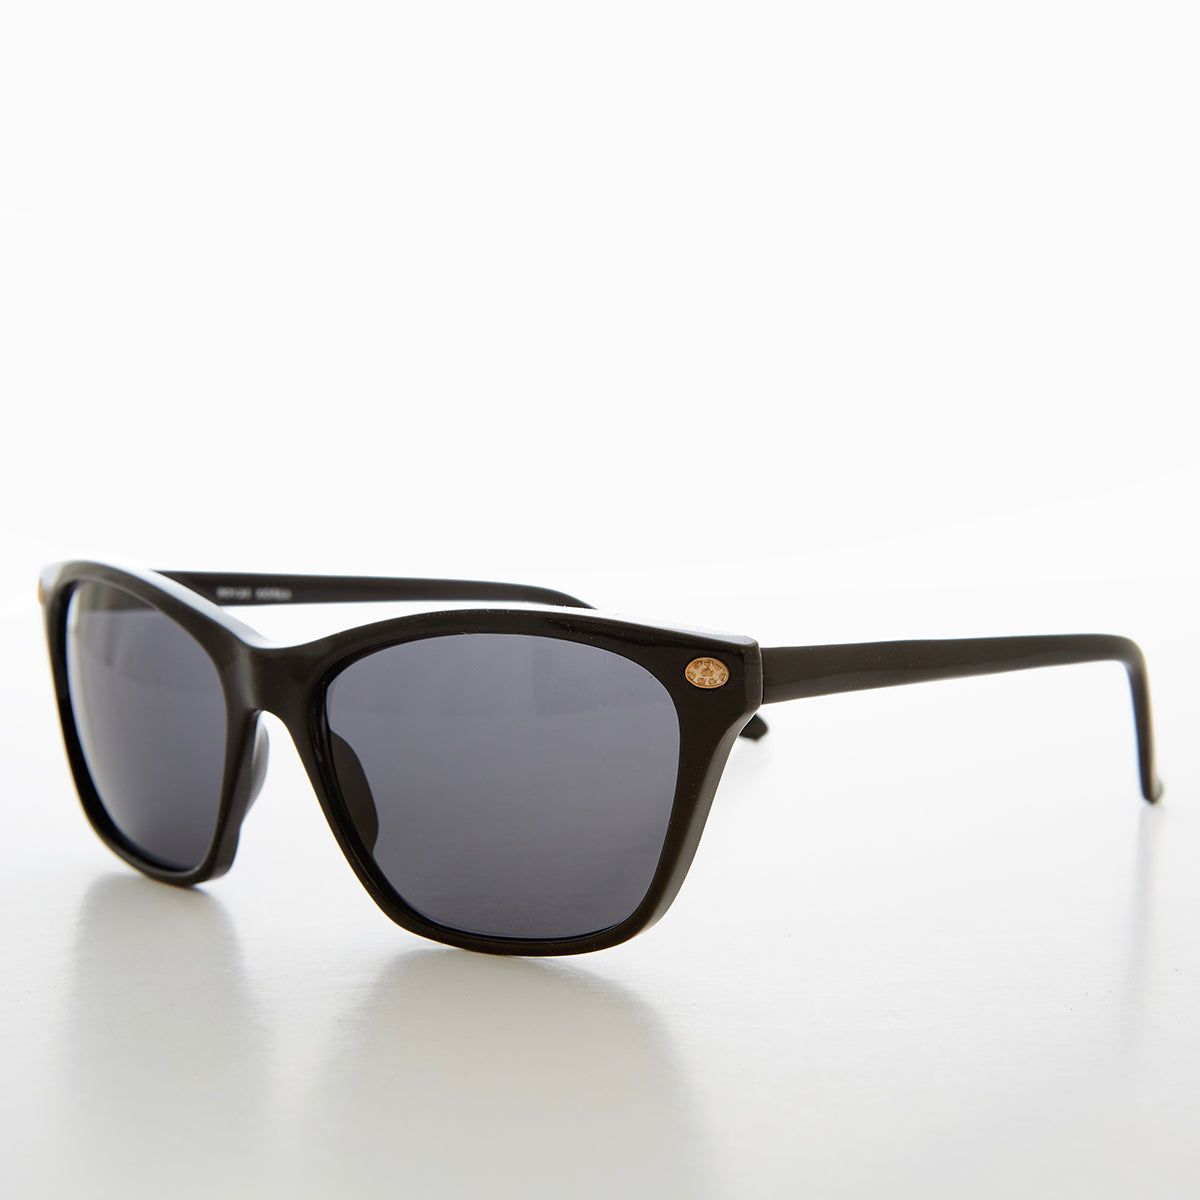 Black Simple Classic Vintage Sunglasses